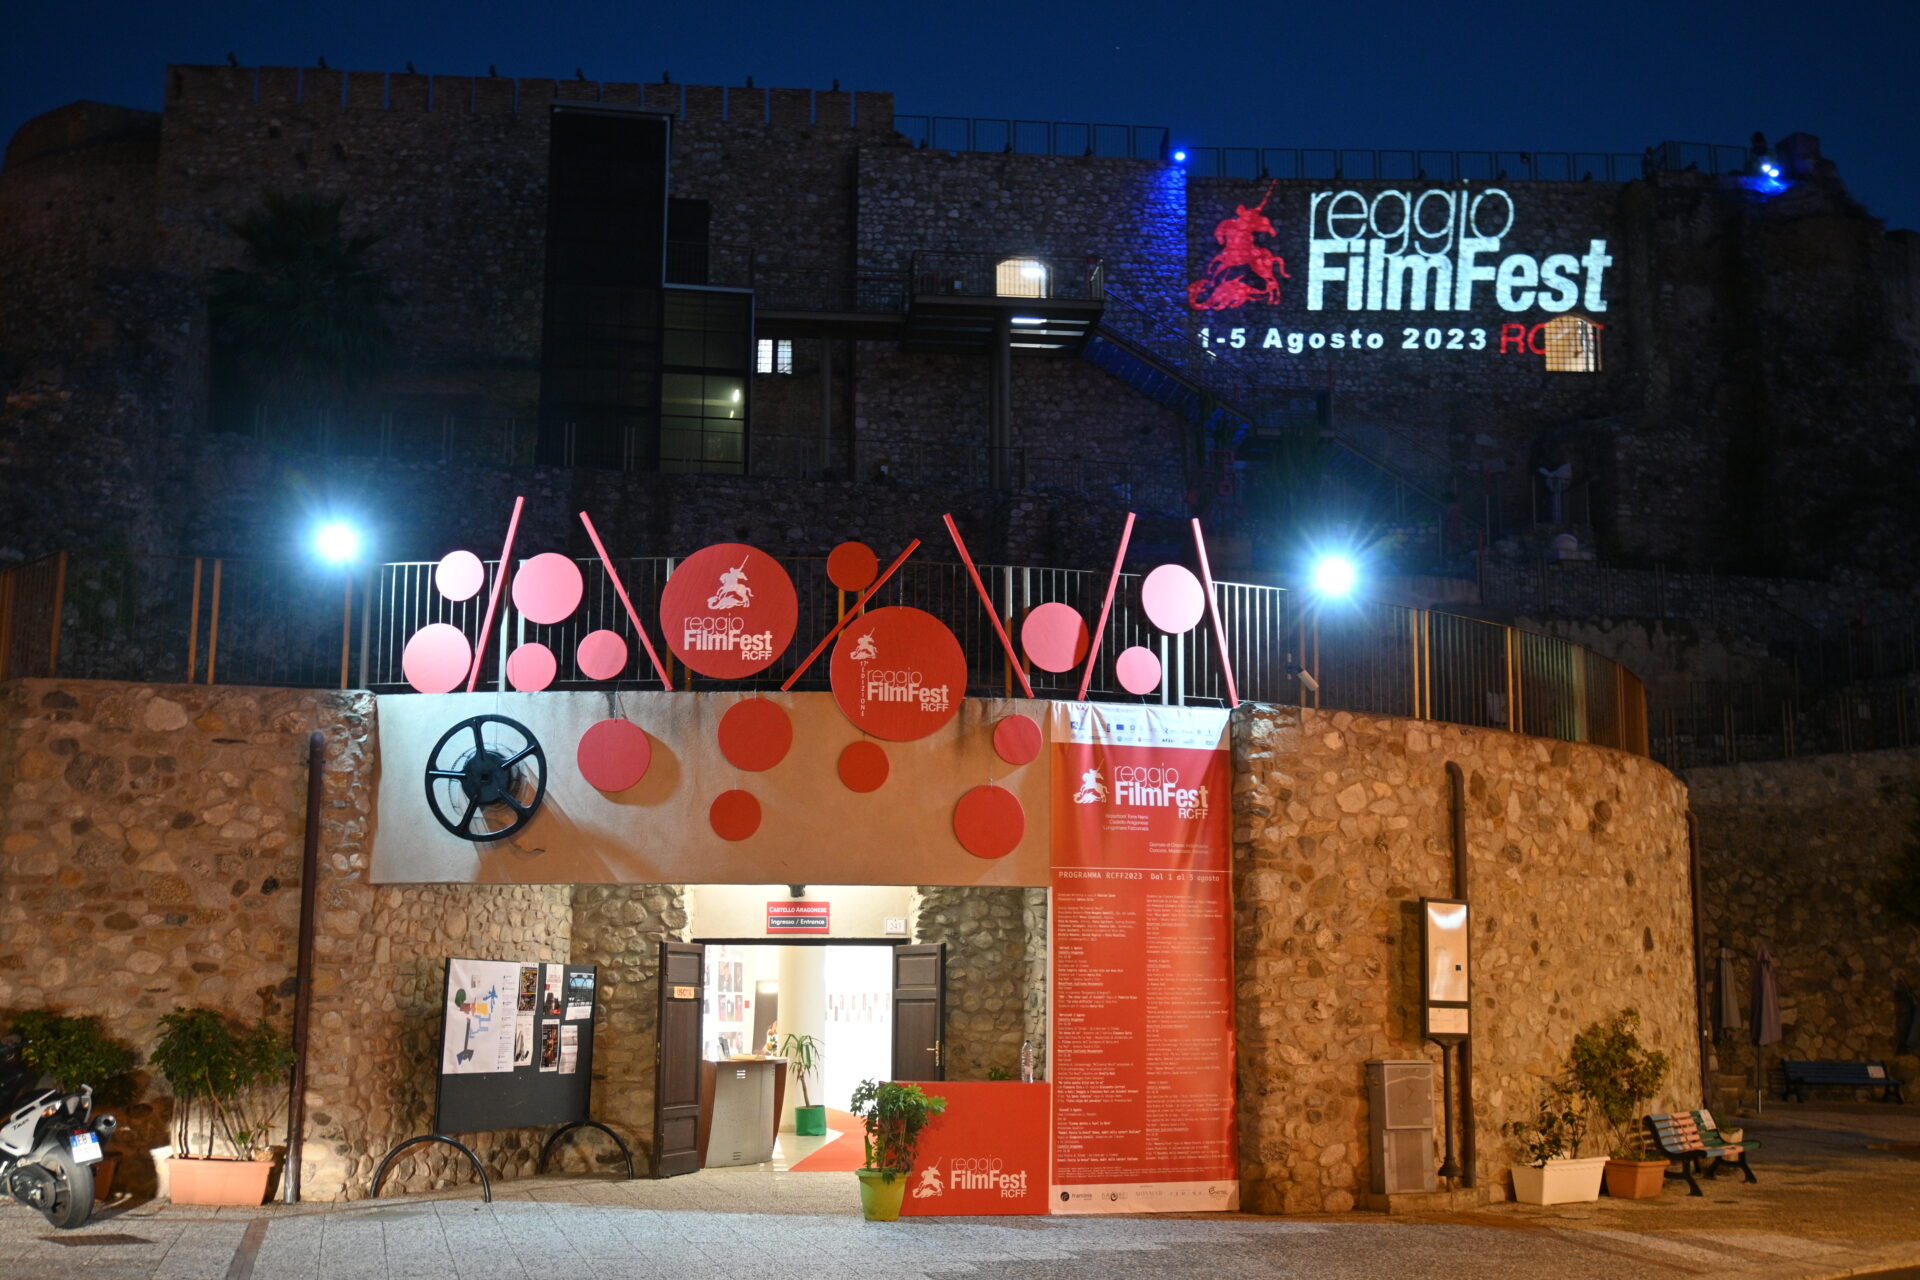 Quarta giornata di Reggio FilmFest con un tramonto culturale